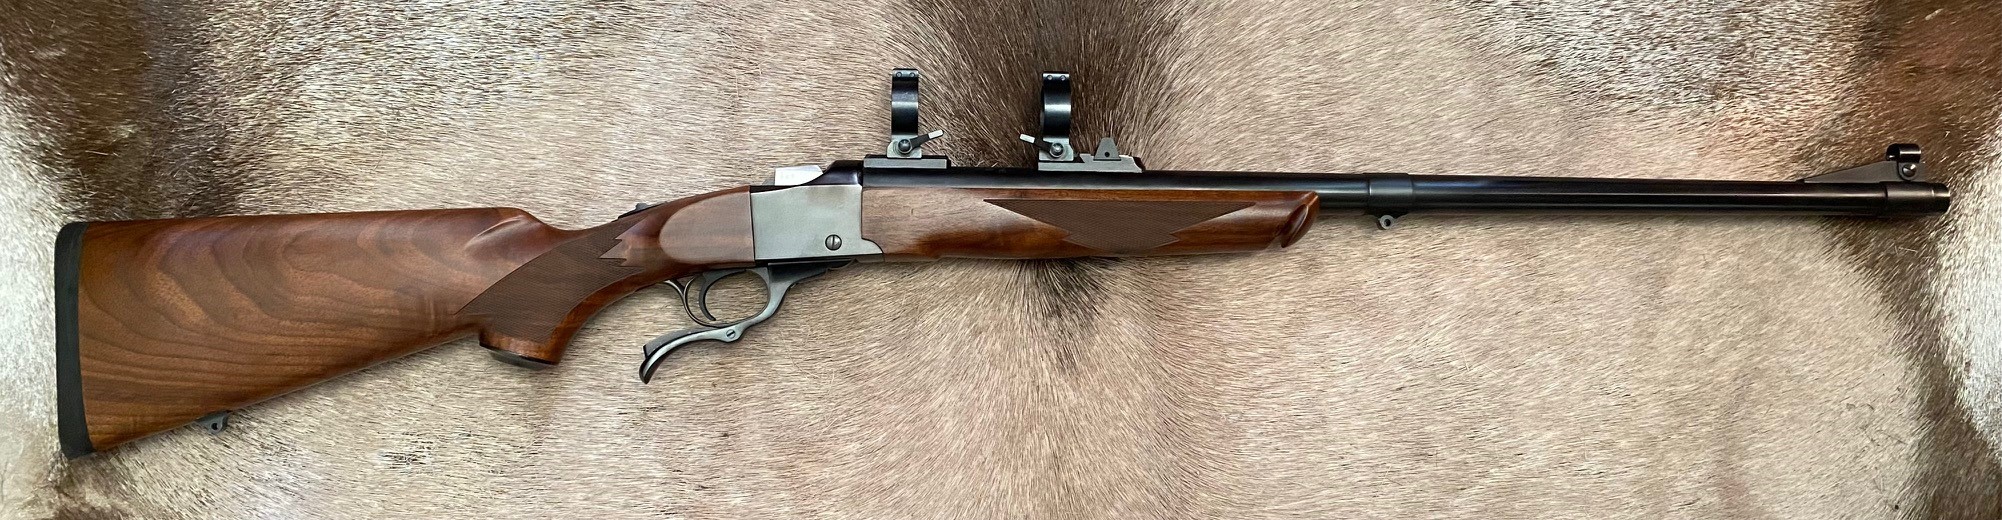 NECG RUGER No.1 20 Bore Slug Gun - UG-369